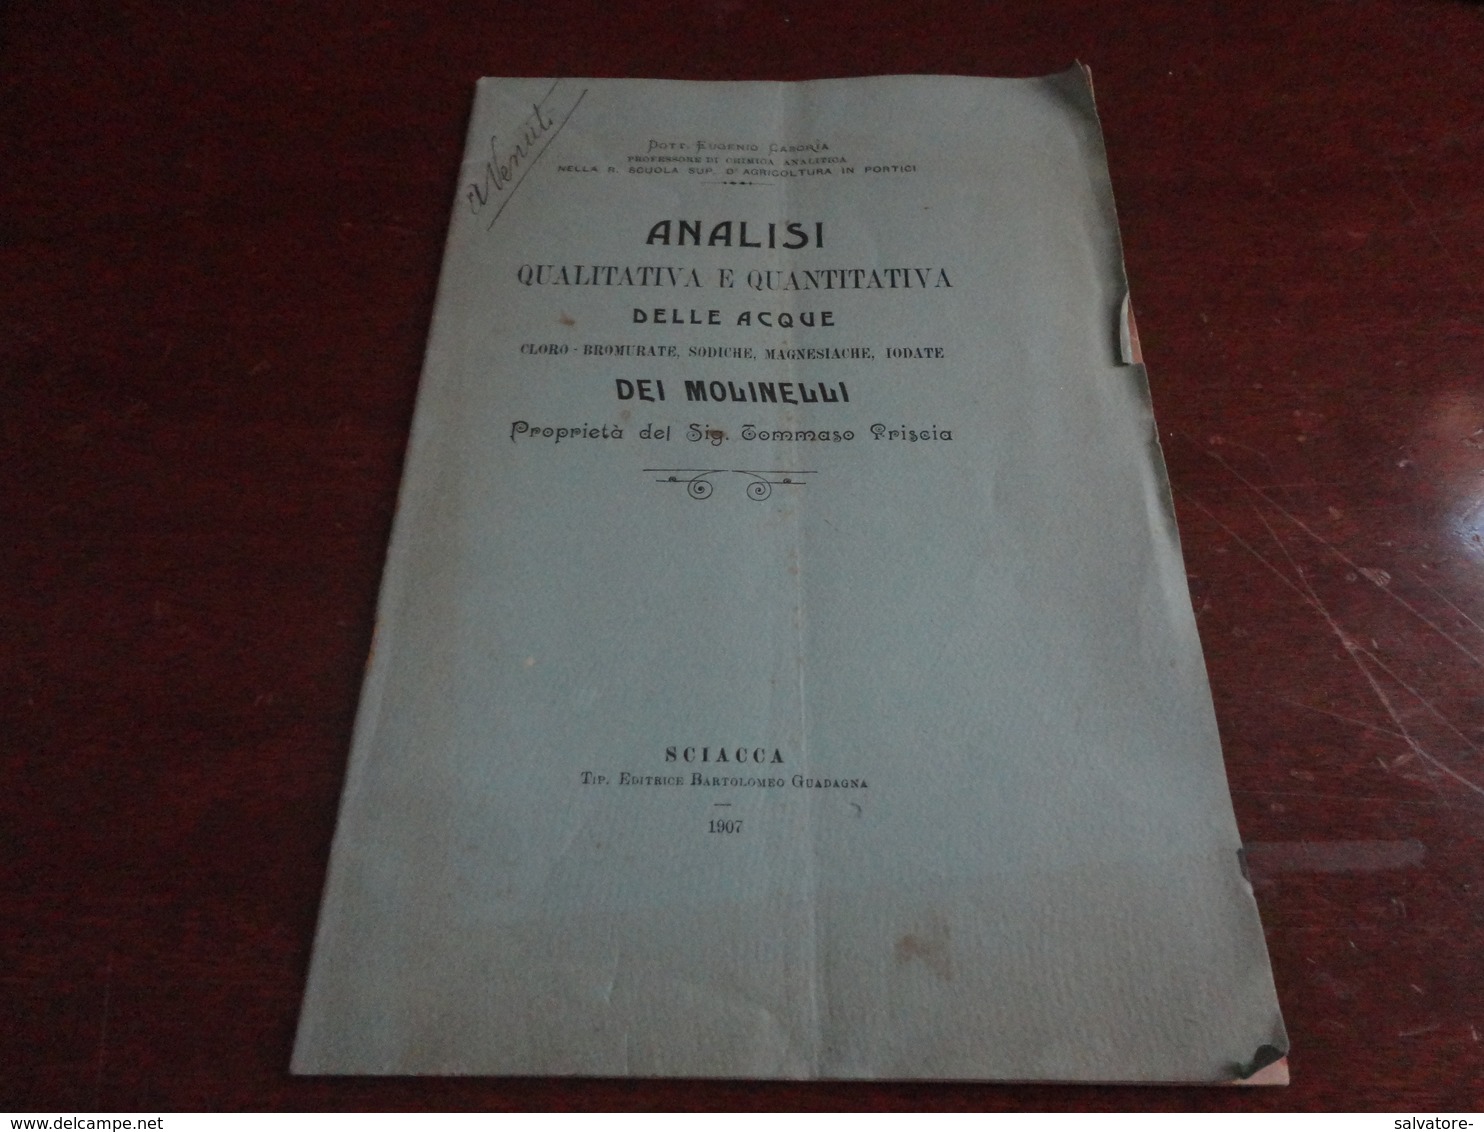 ANALISI QUALITATIVA E QUANTITATIVA DELLE ACQUE DEI MOLINELLI-DOTTOR EUGENIO CASORIA - SCIACCA (AG) 1907 - Medizin, Biologie, Chemie